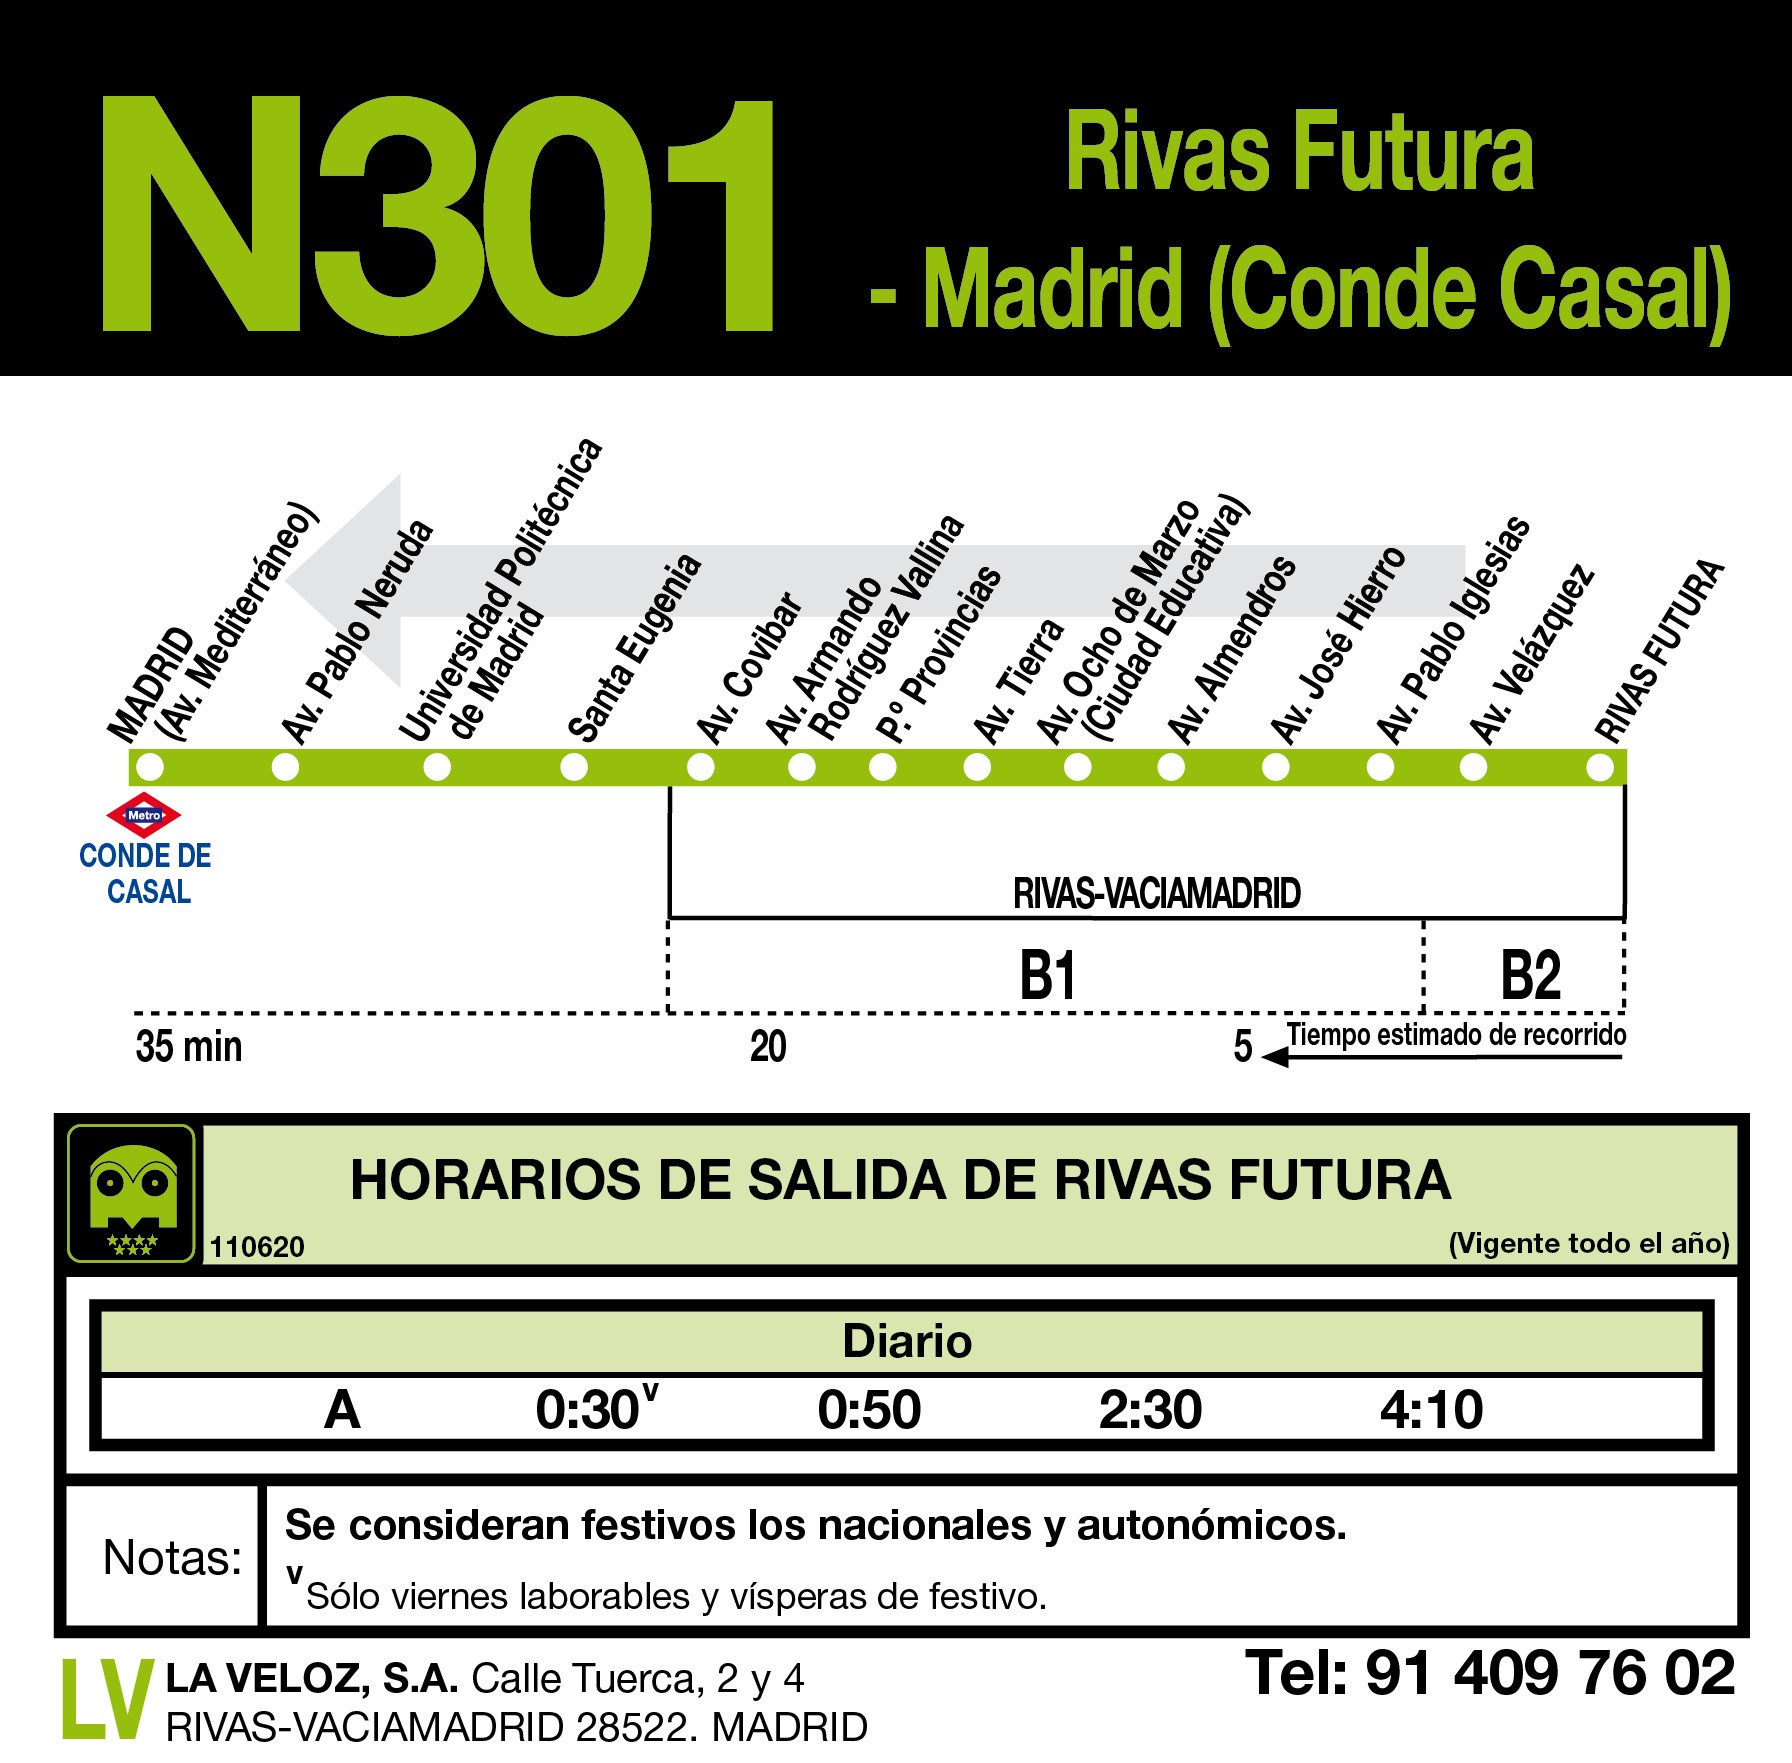 Madrid (C.Casal) - Rivas Futura